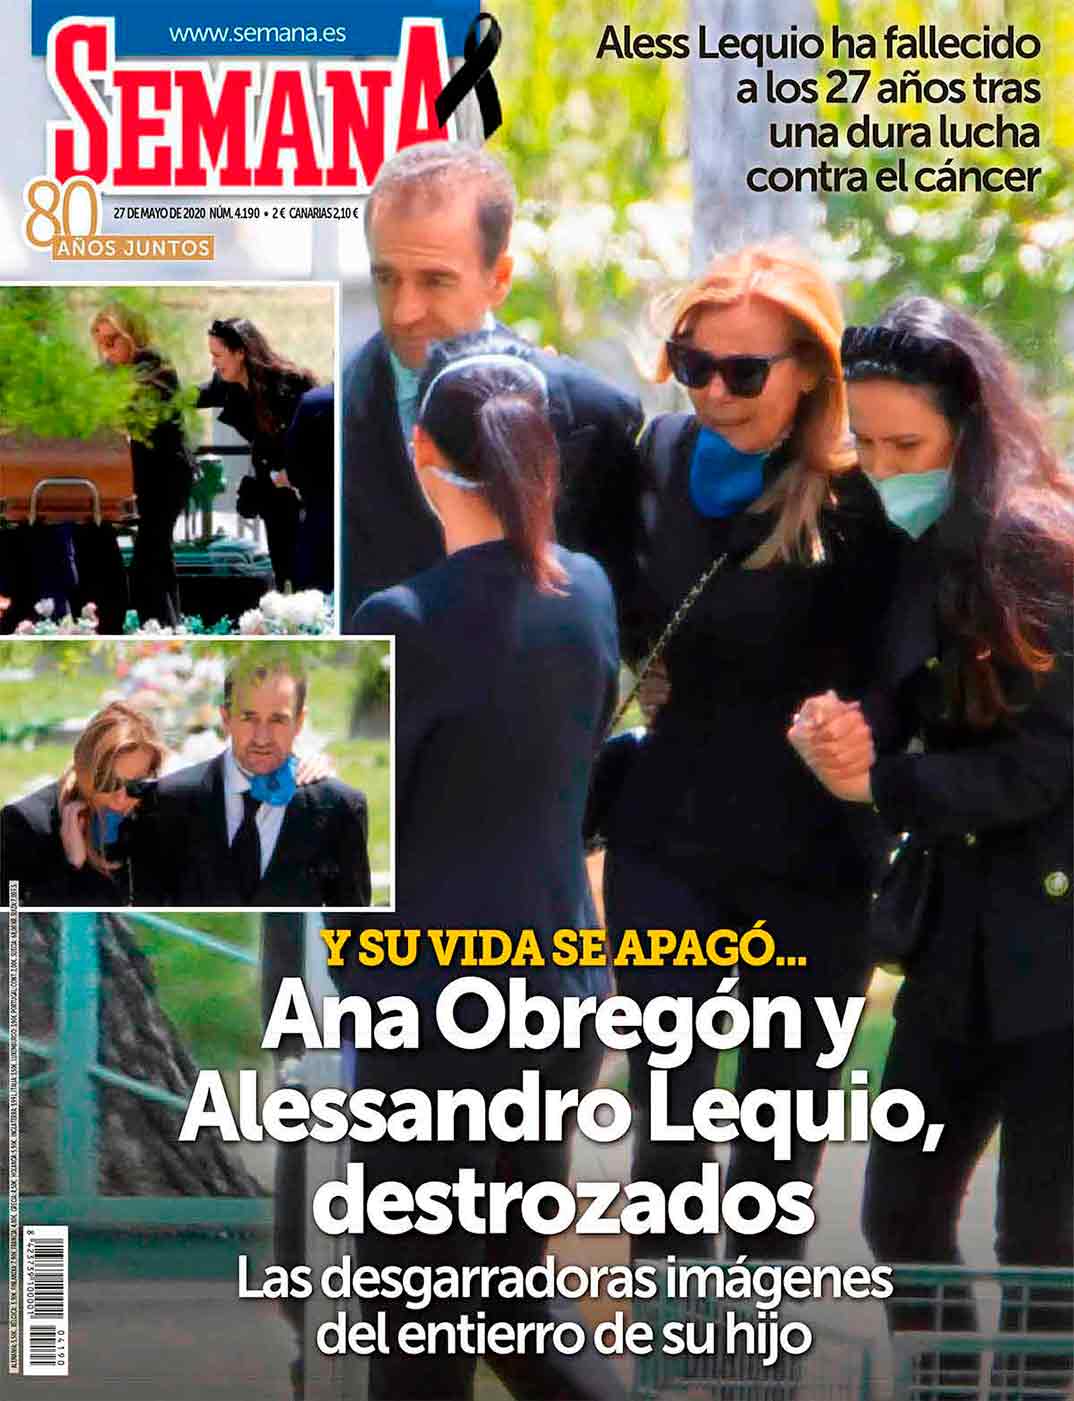 Ana Obregón Alessandro Lequio - Entierro Alex Lequio - Semana